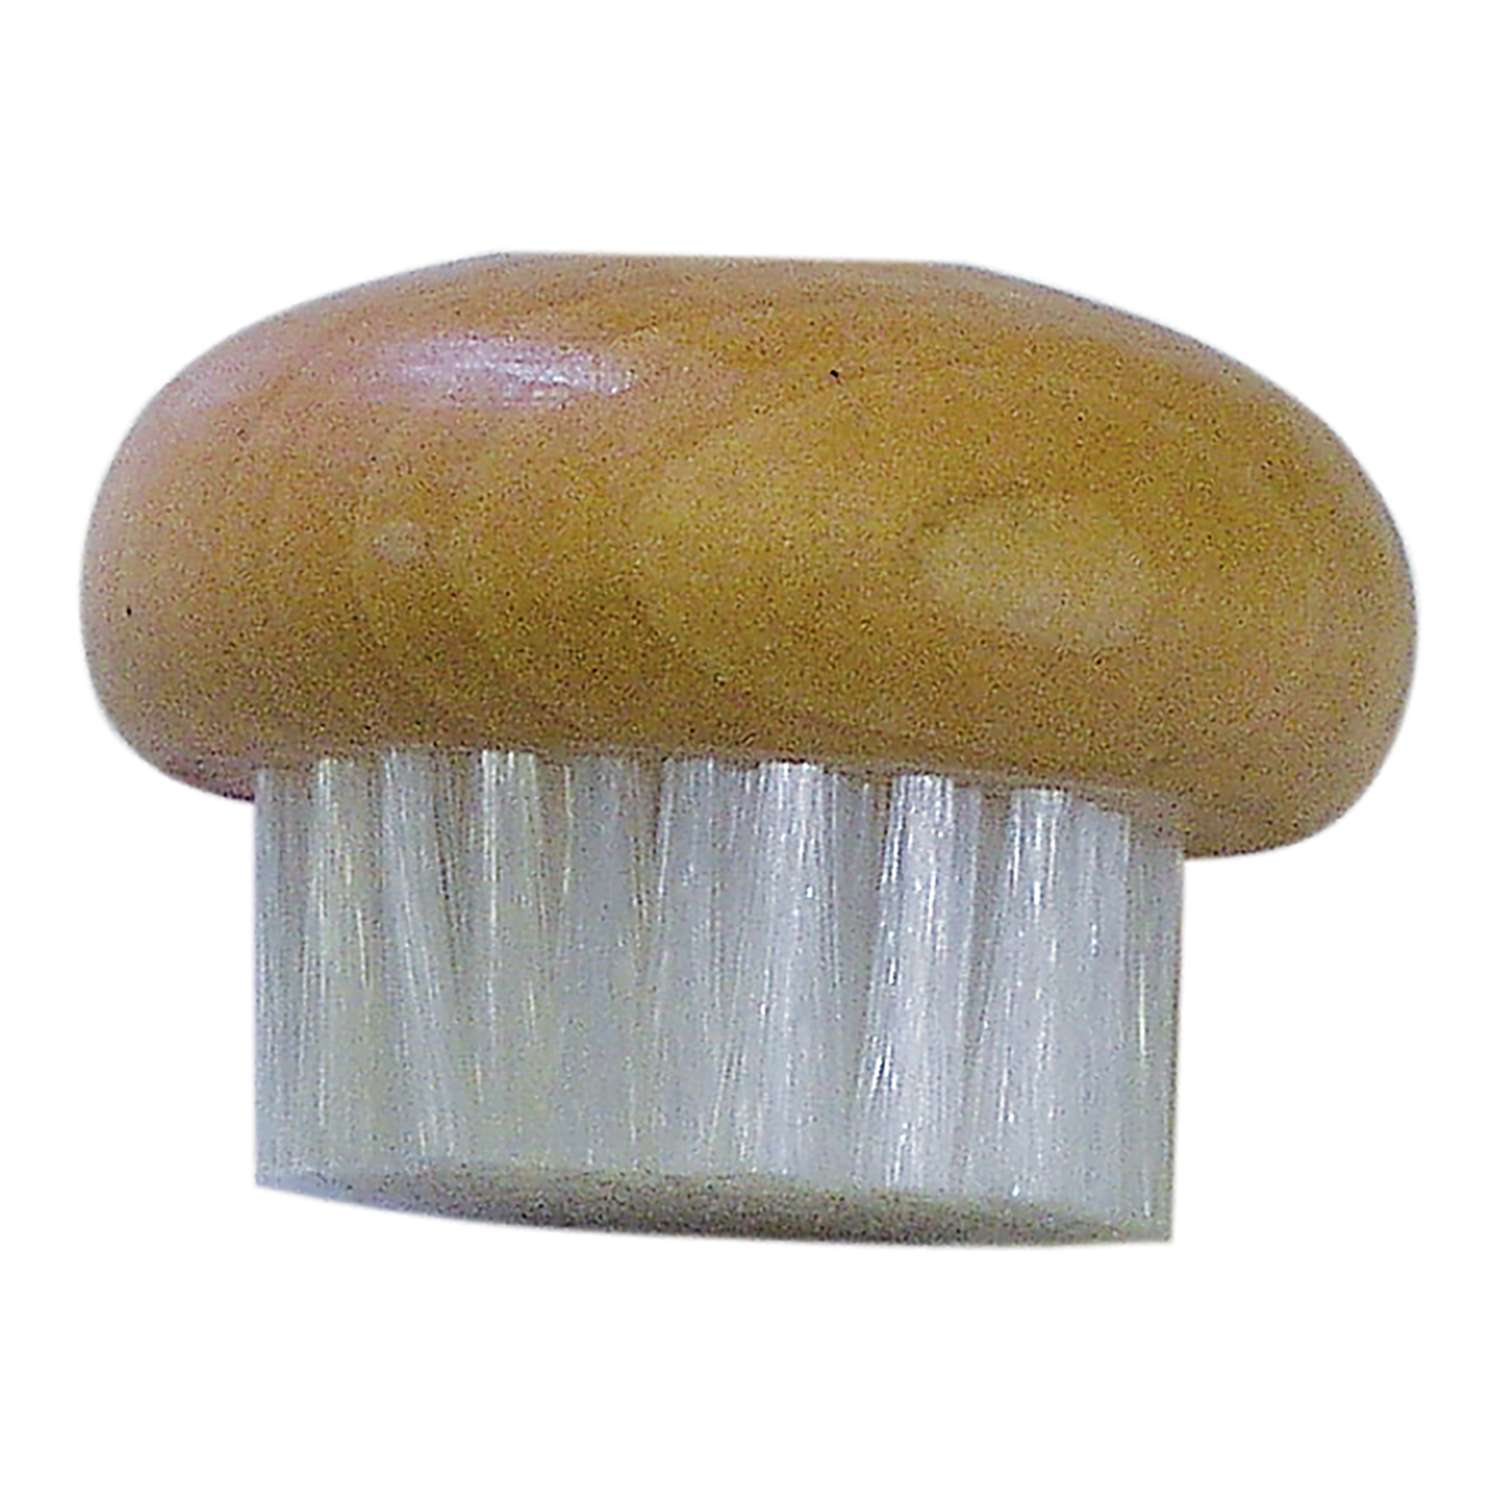 Full Circle FunGuy, 2 in 1 Mushroom Cleaning Brush, White Mushroom White